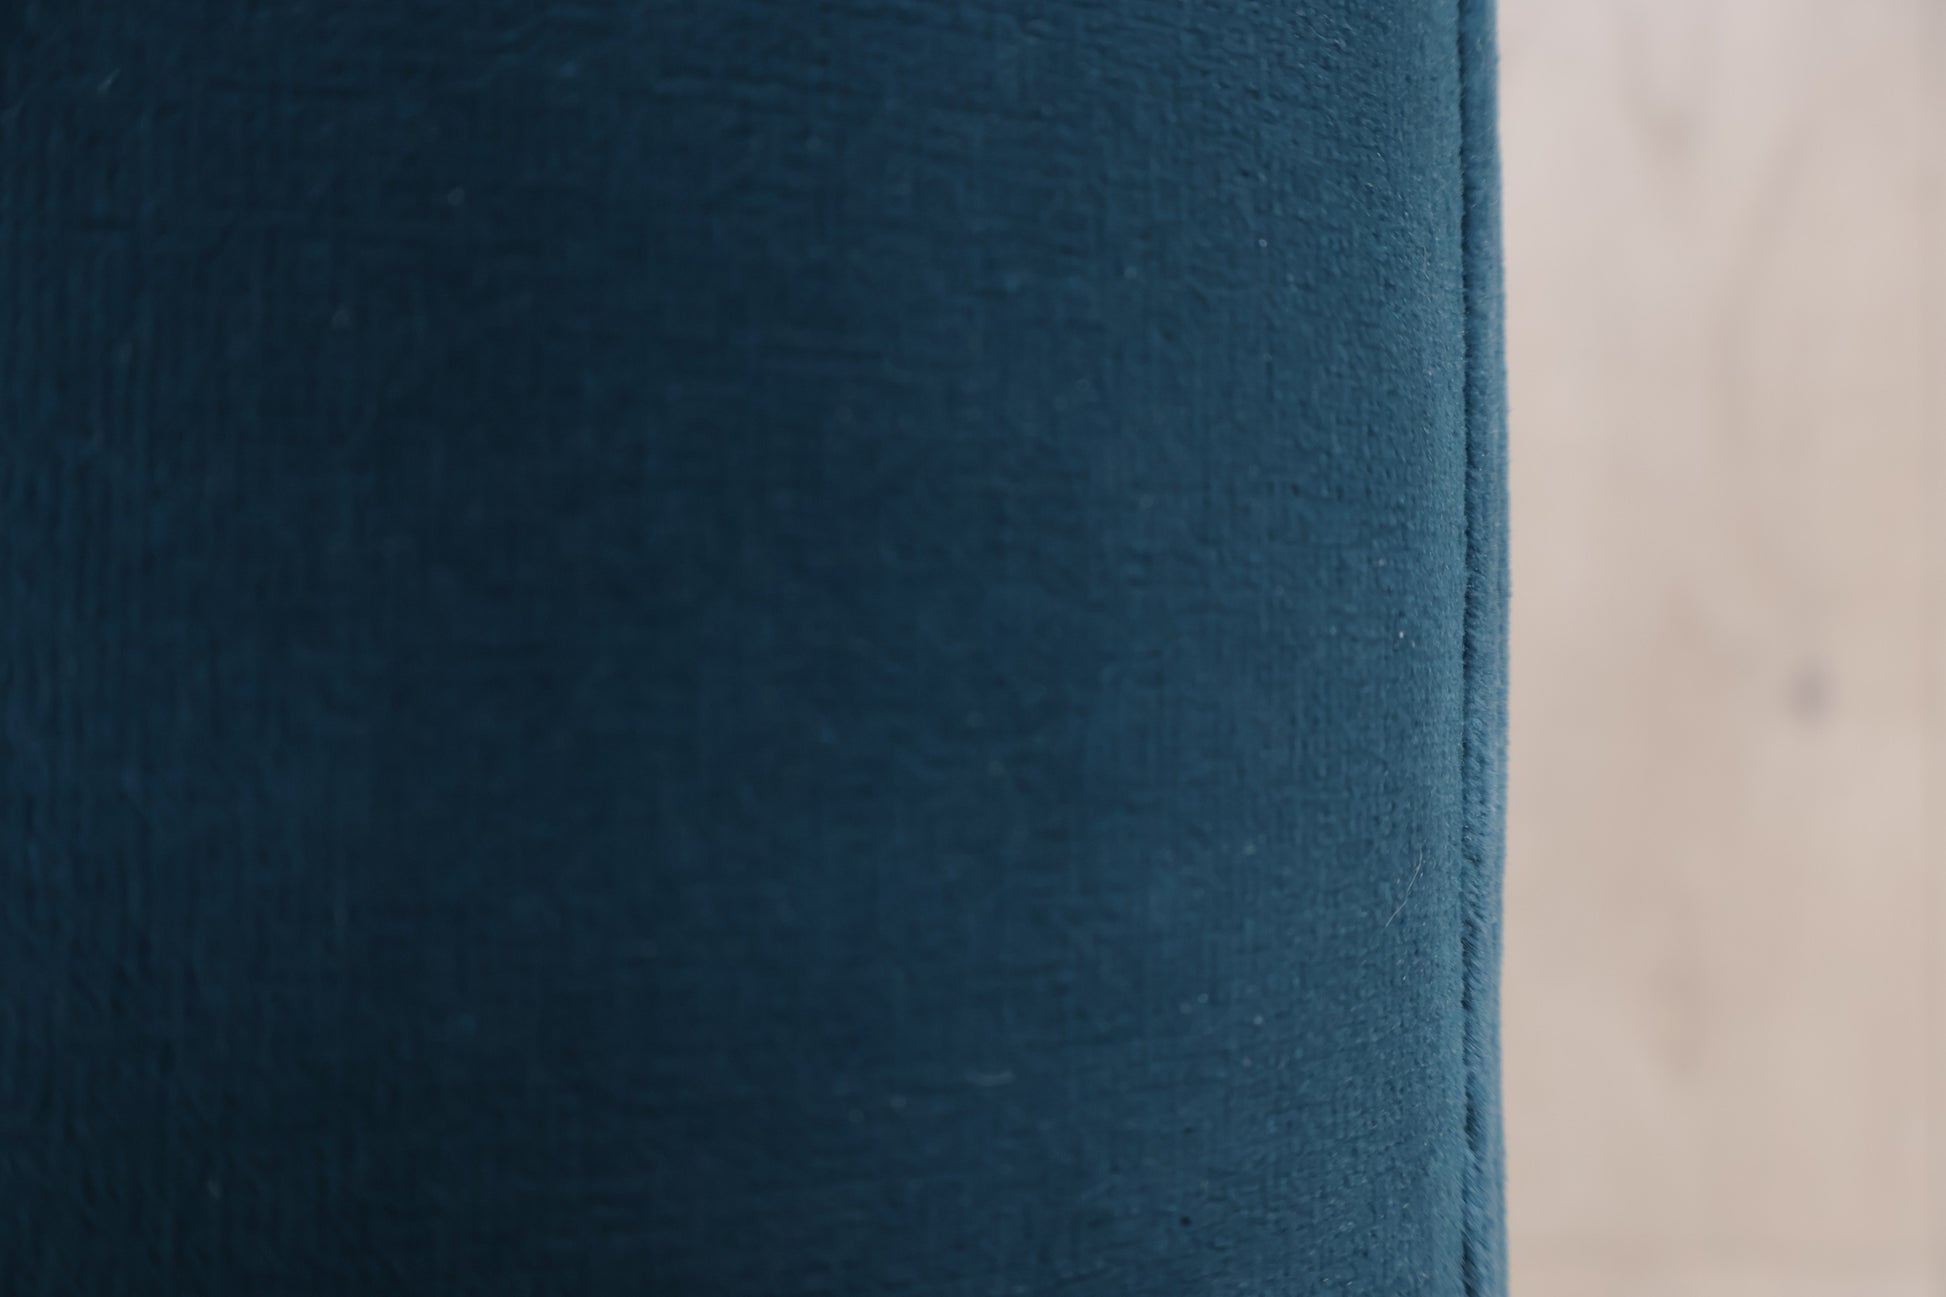 Nyrenset | Blå Bolia Mara 3-seter sofa i velur